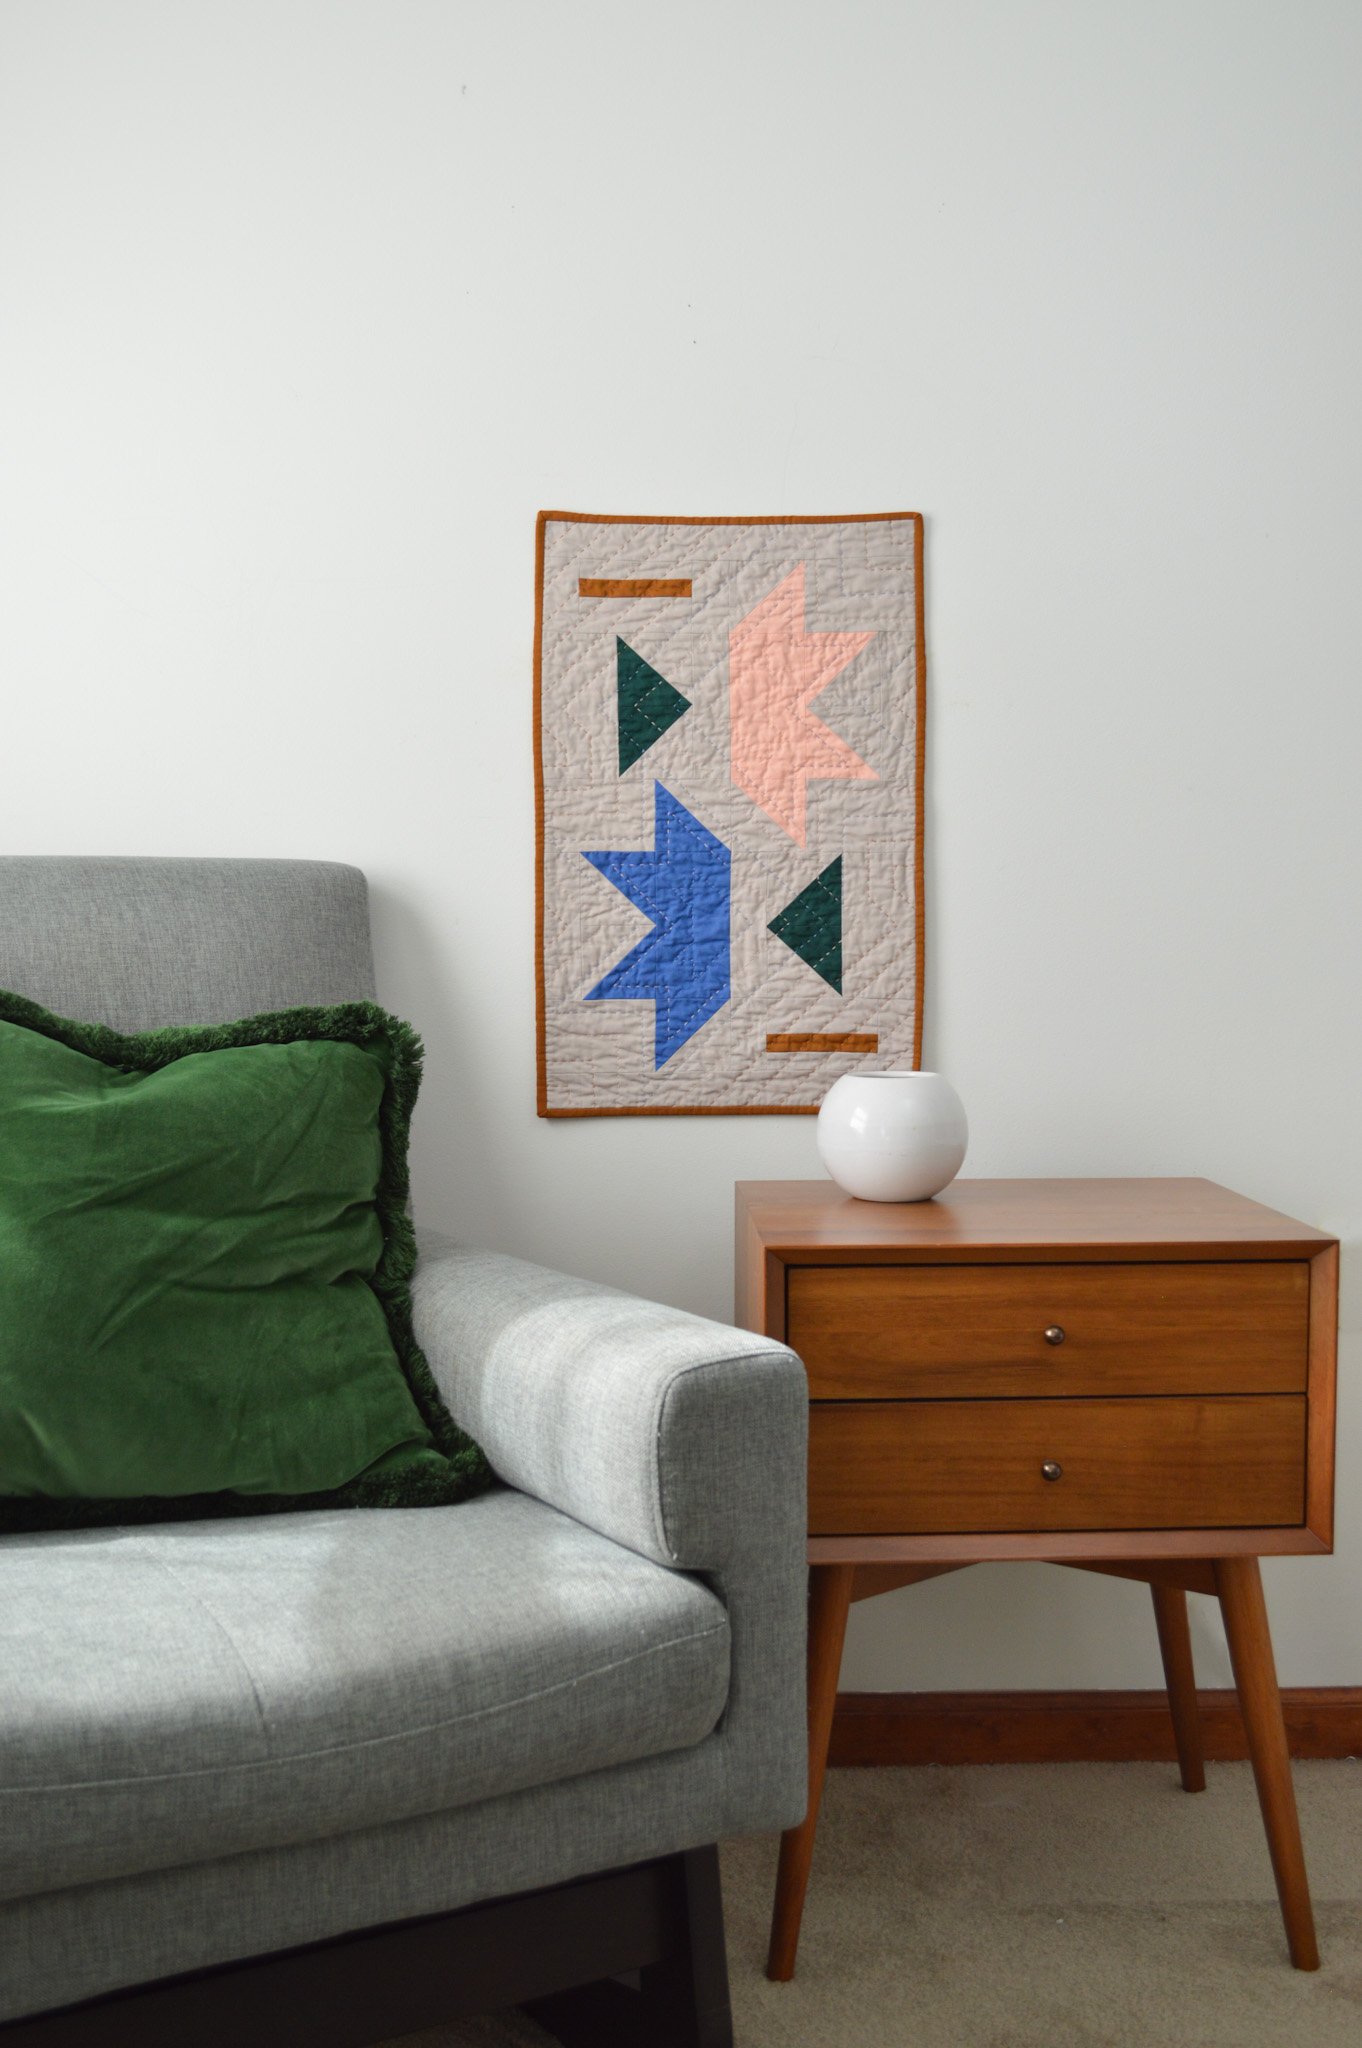  a modern mini quilt hanging on a wall amongst modern decor 